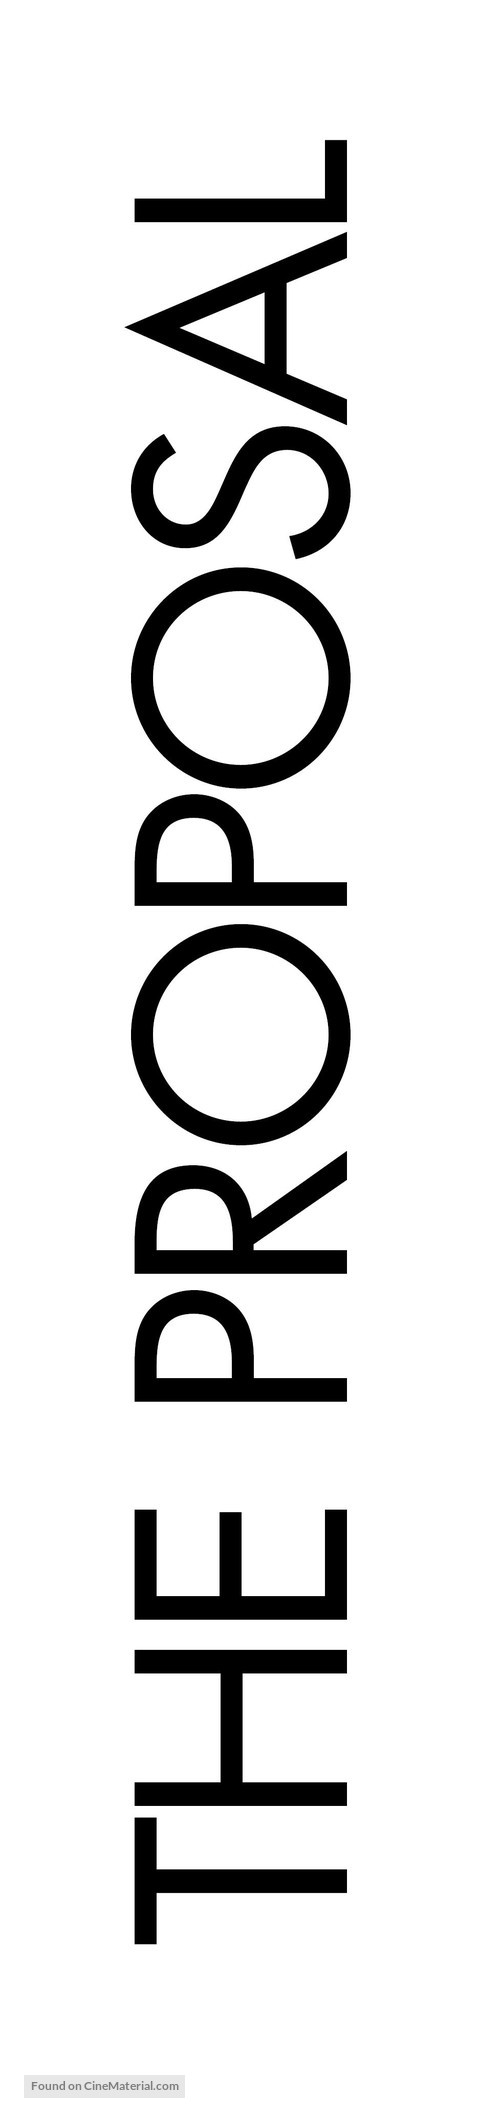 The Proposal - Logo